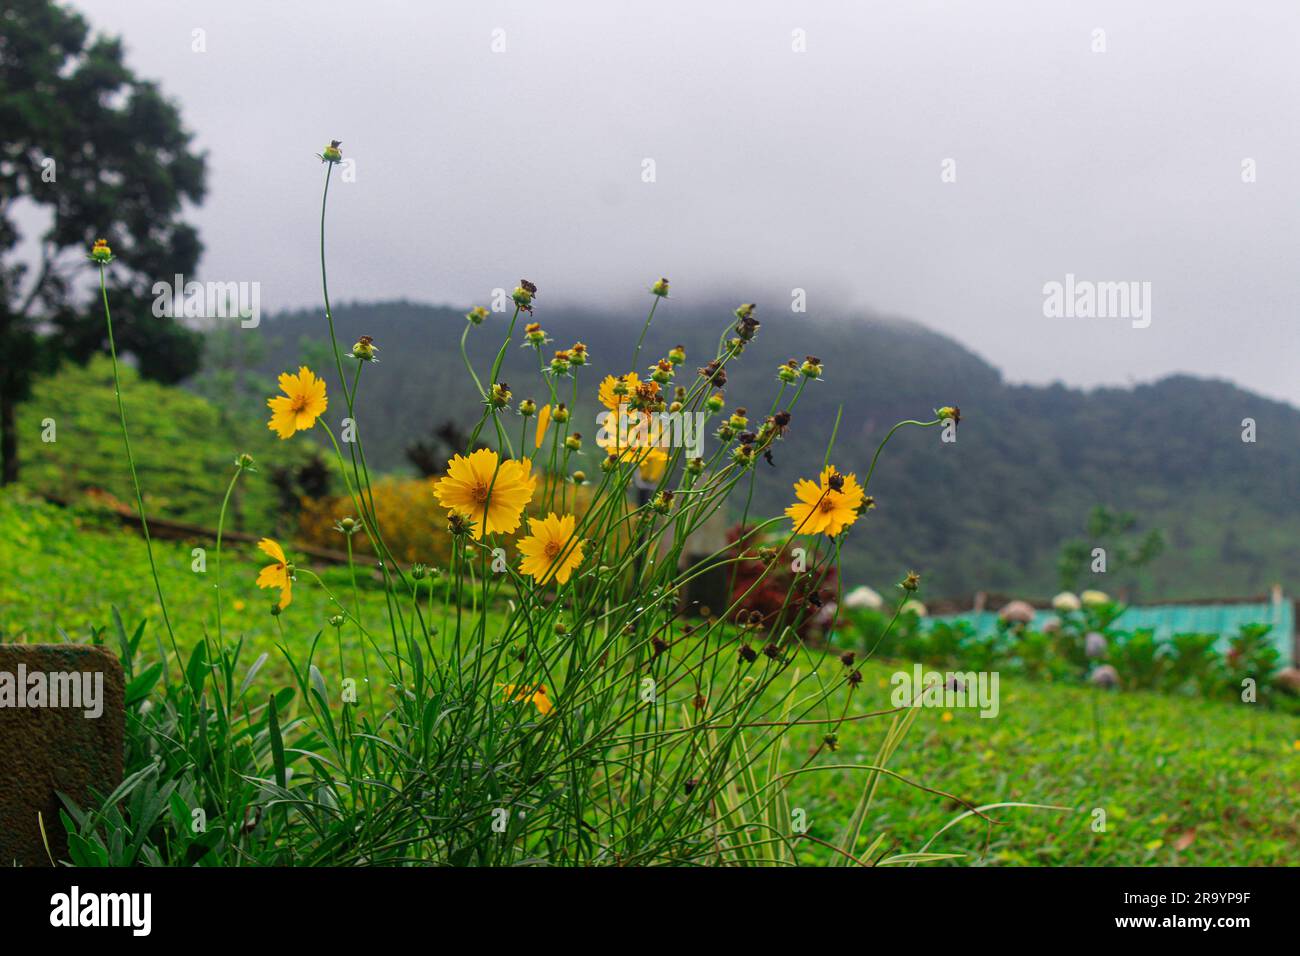 Une scène vibrante et pittoresque avec des fleurs sauvages jaune vif au bord d'un champ vert luxuriant Banque D'Images